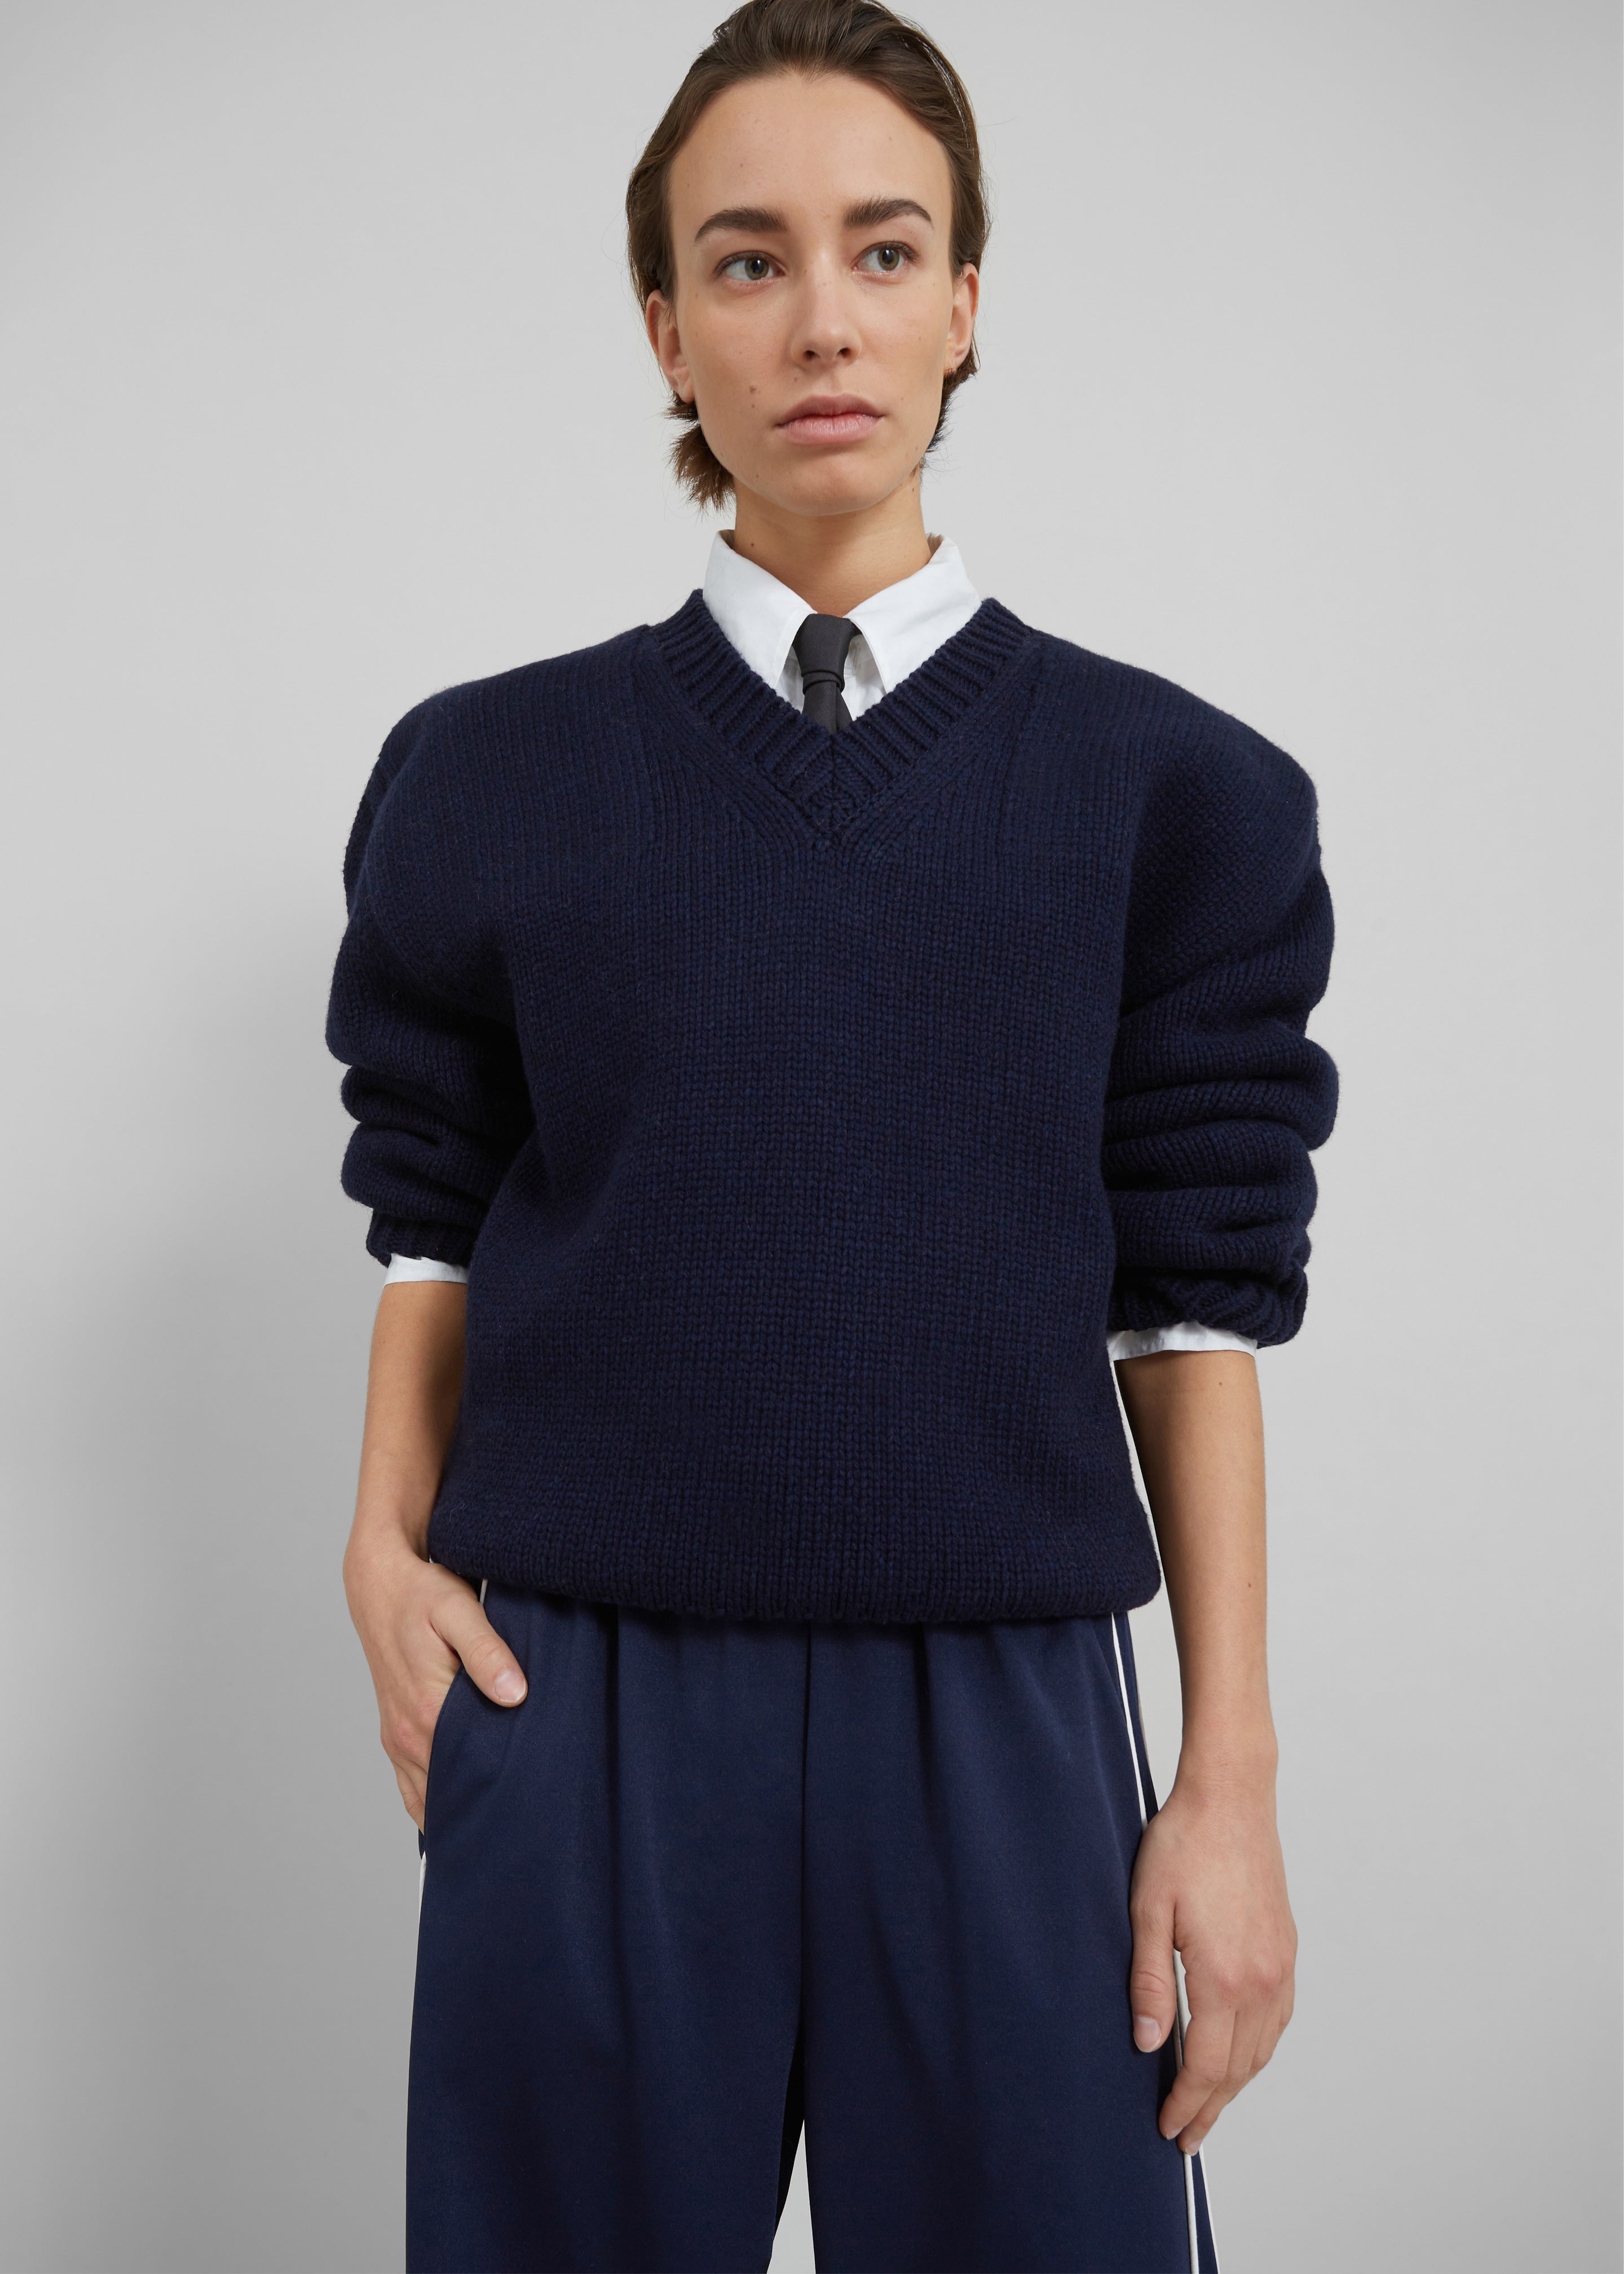 Edina Two Tone Wool Sweater - Navy - 8